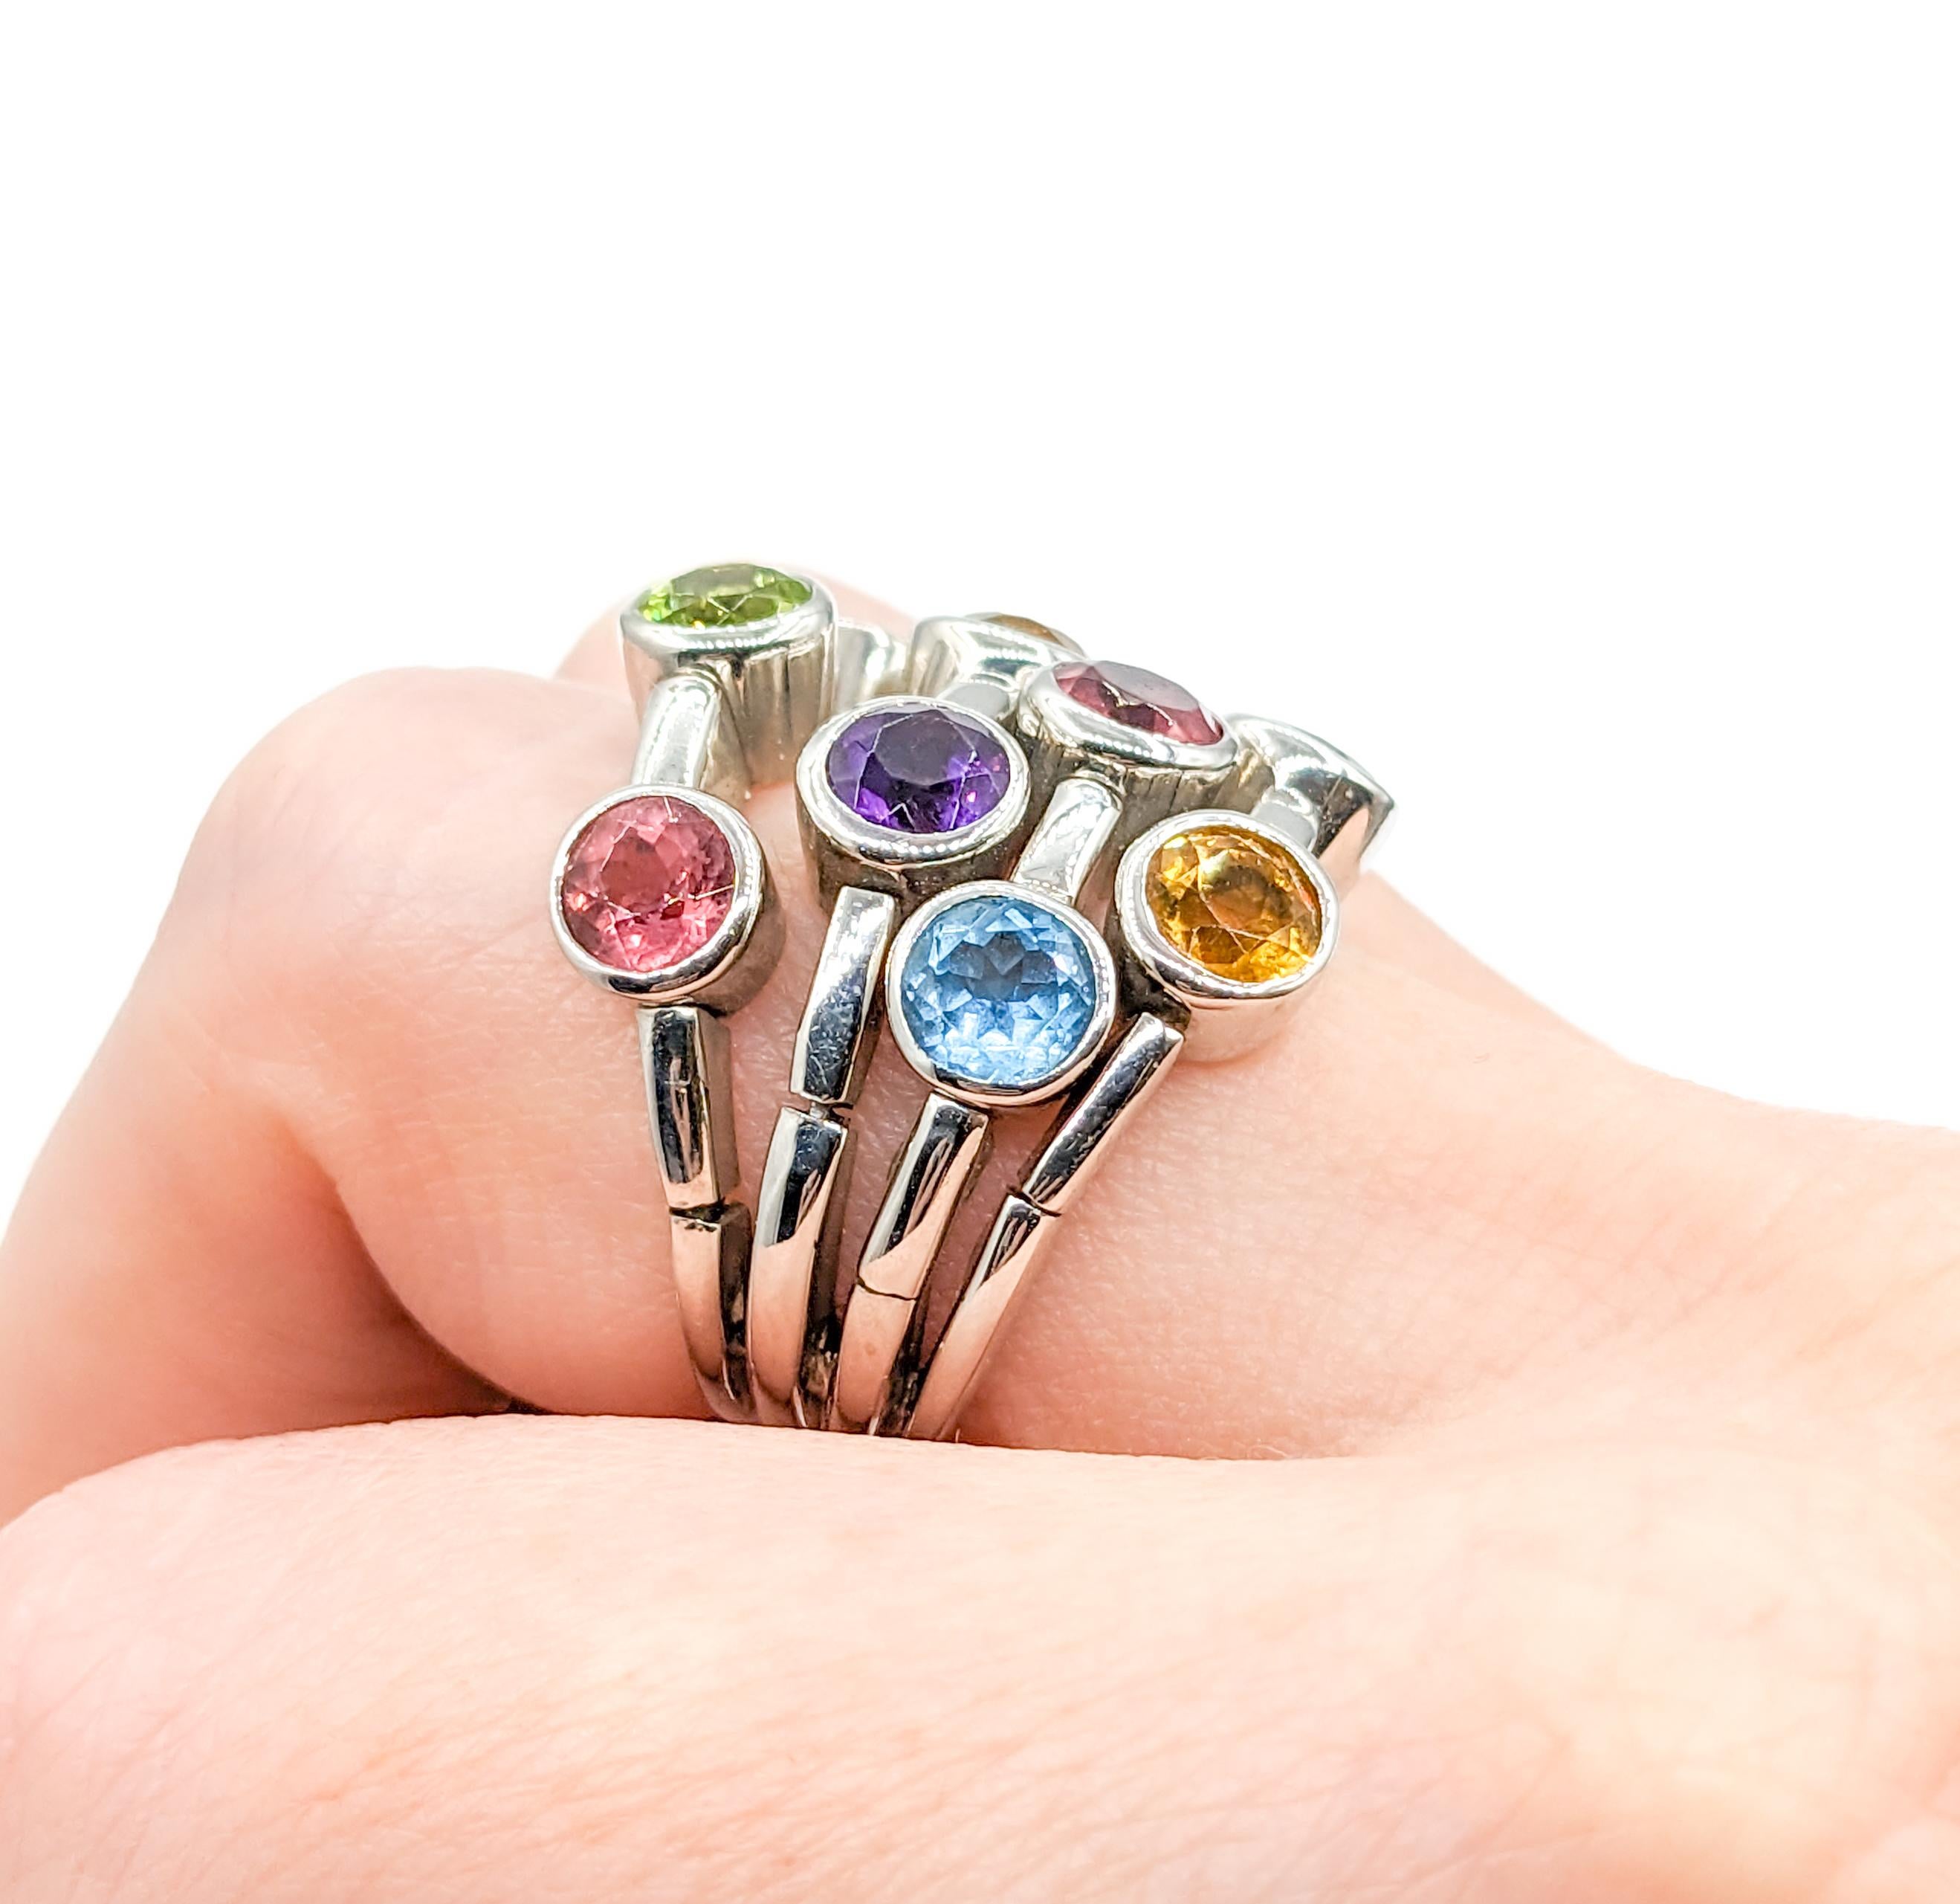 Sonia Bitton Flexibler Ring mit mehreren Edelsteinen

Entdecken Sie die Kunstfertigkeit von Sonia B (Sonia Bitton). in diesem auffälligen Ring, der aus 14 Karat Weißgold gefertigt ist. Er ist stolz auf seine zehn 5 mm großen Multisteine, von denen